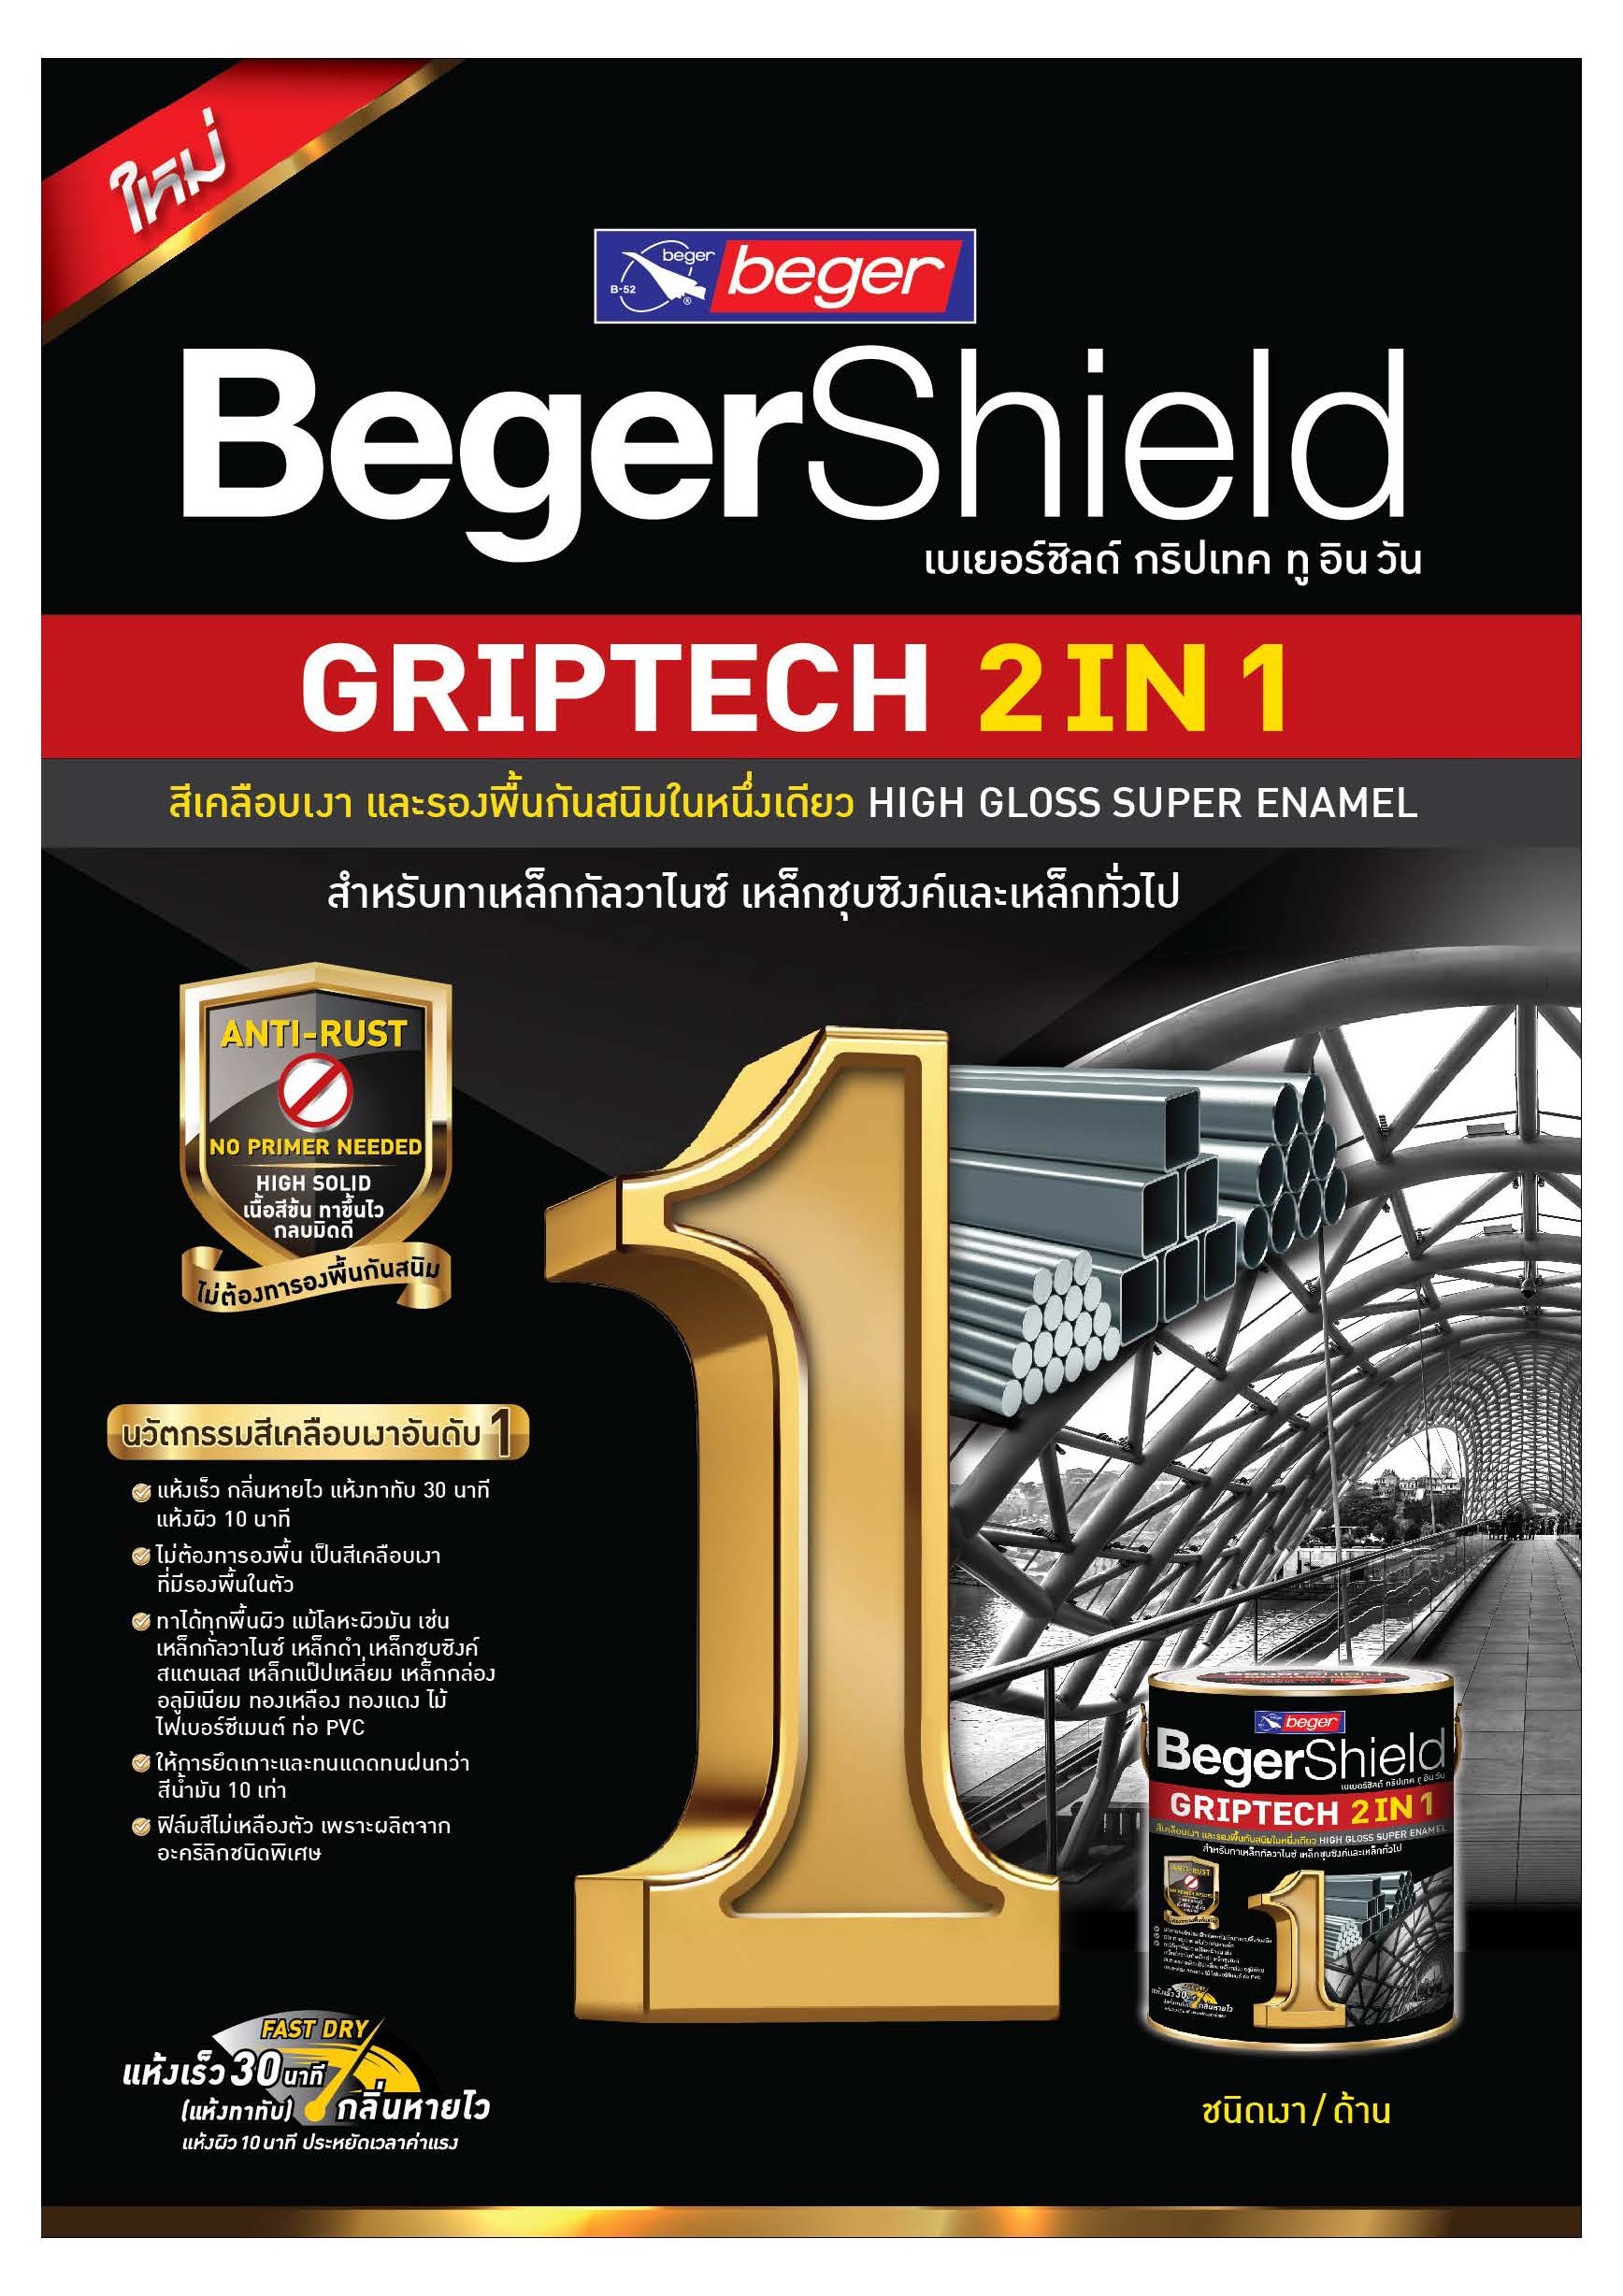 เบเยอร์ชิลด์ กริปเทค สีเคลือบเงา 2in 1 / BegerShield GripTech 2 in 1